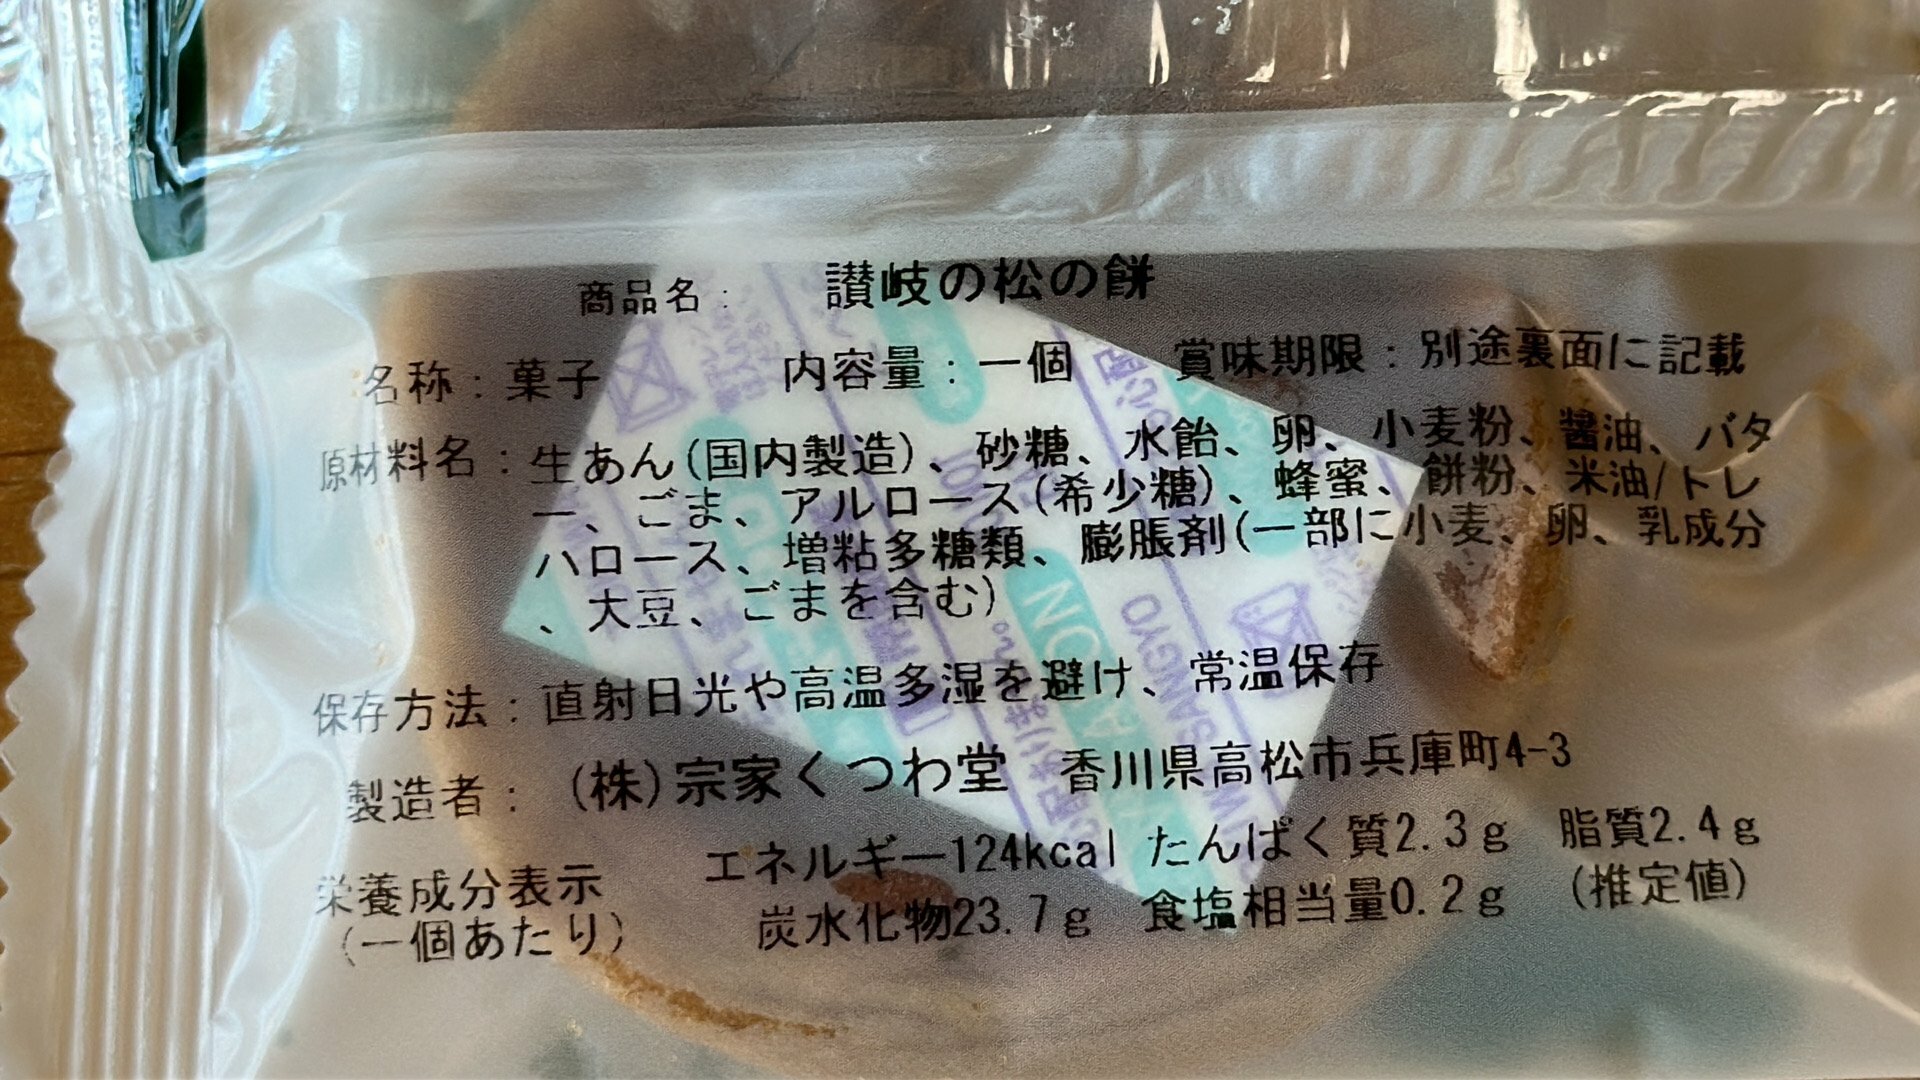 讃岐の松の餅の原材料等情報